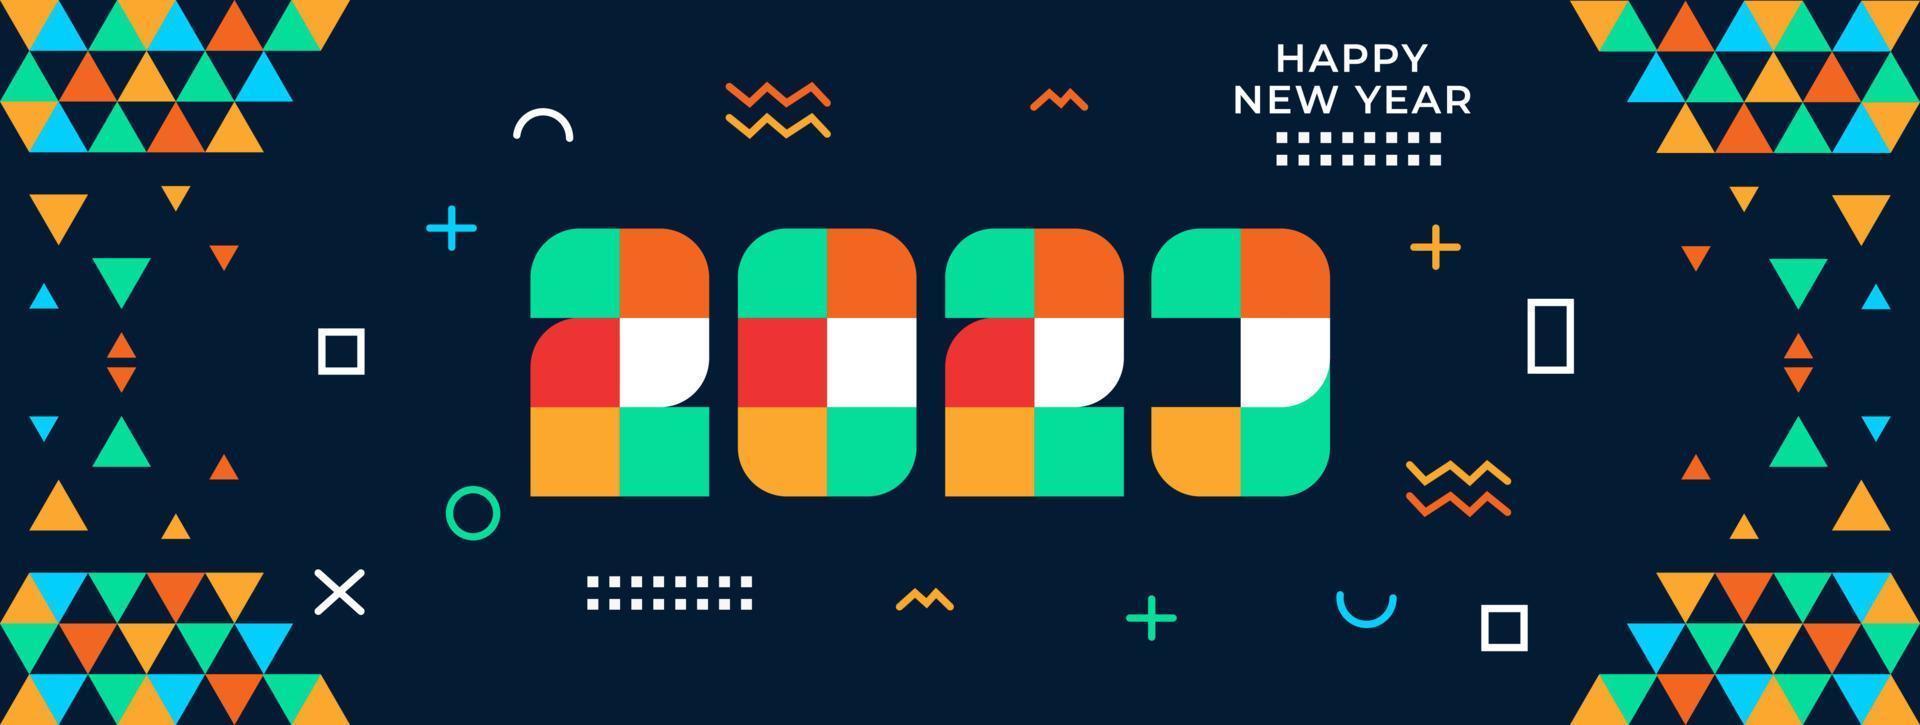 feliz año nuevo 2023 saludo banner logo diseño ilustración, creativo y colorido 2023 año nuevo vector tipografía banner, con diseño geométrico abstracto moderno y fondo en estilo retro